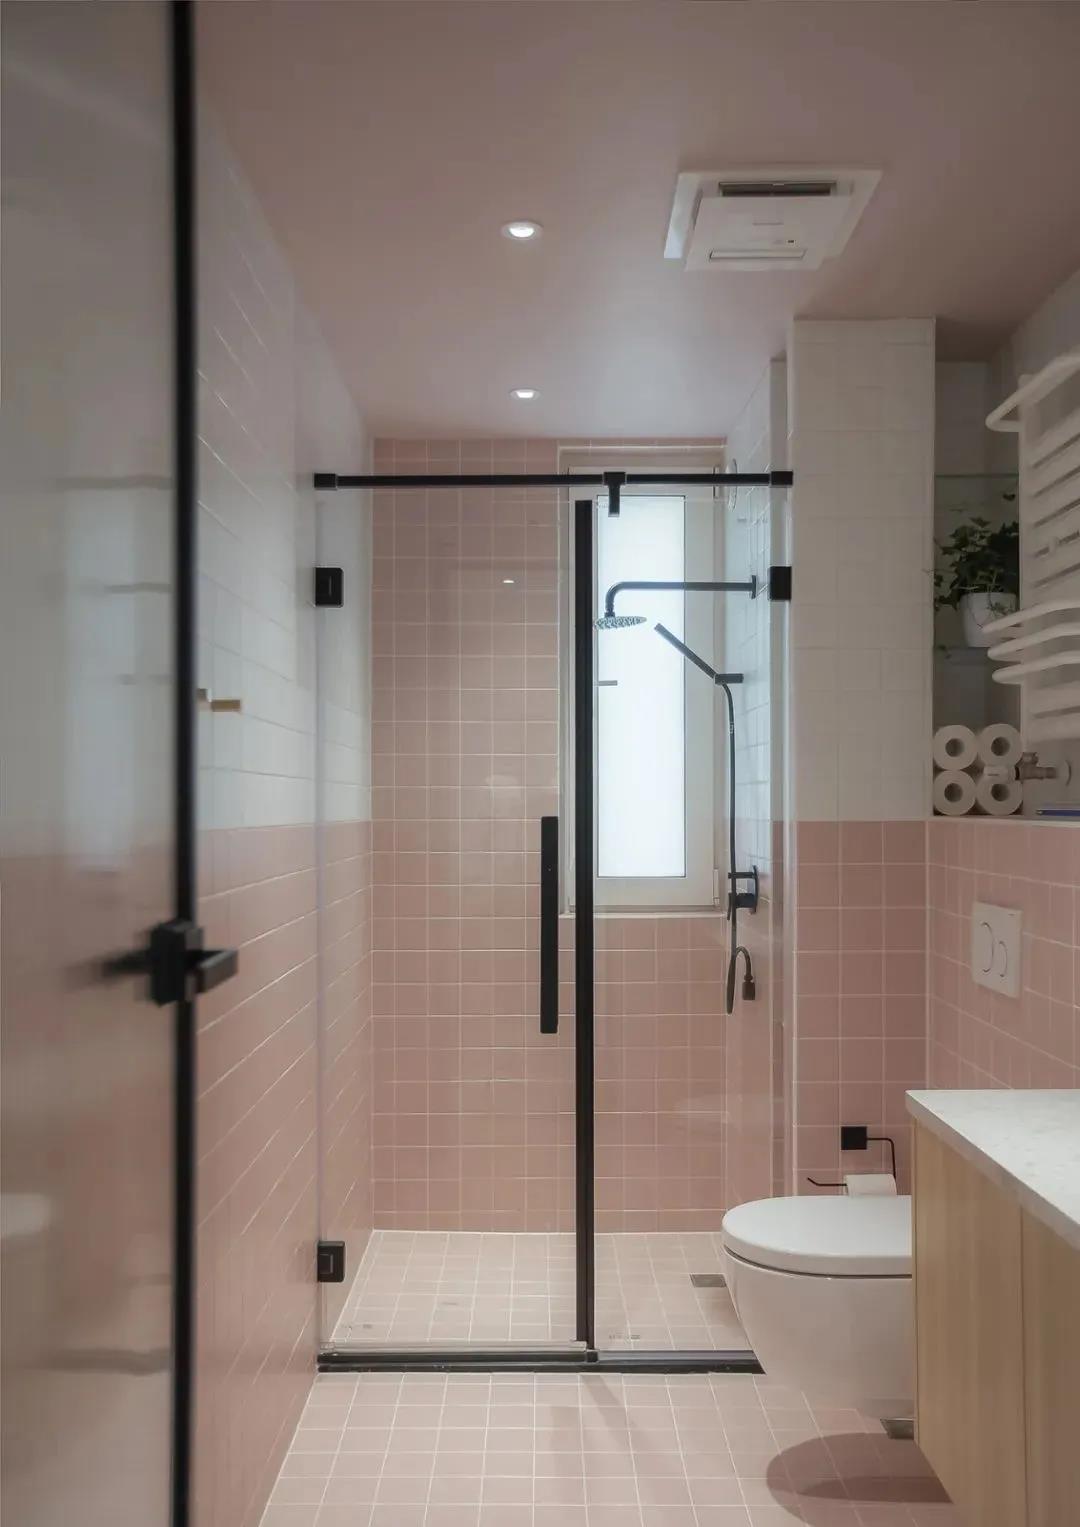 整个卫浴空间以白色和粉色为主调，局部采用玻璃进行干湿分离，整体效果简洁清爽。